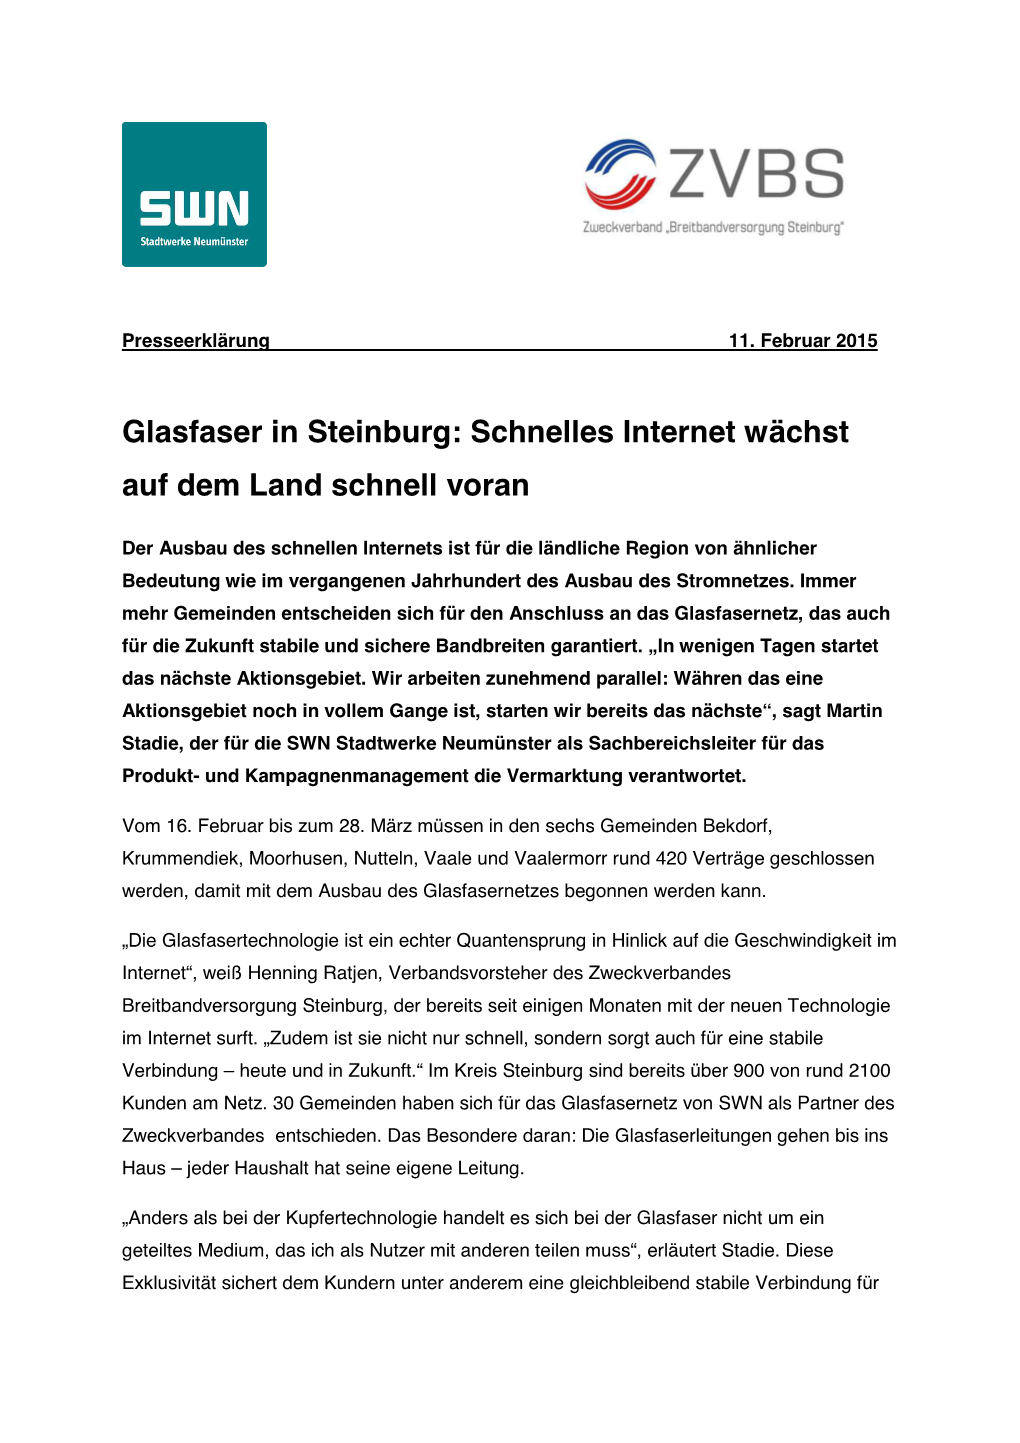 Glasfaser in Steinburg: Schnelles Internet Wächst Auf Dem Land Schnell Voran